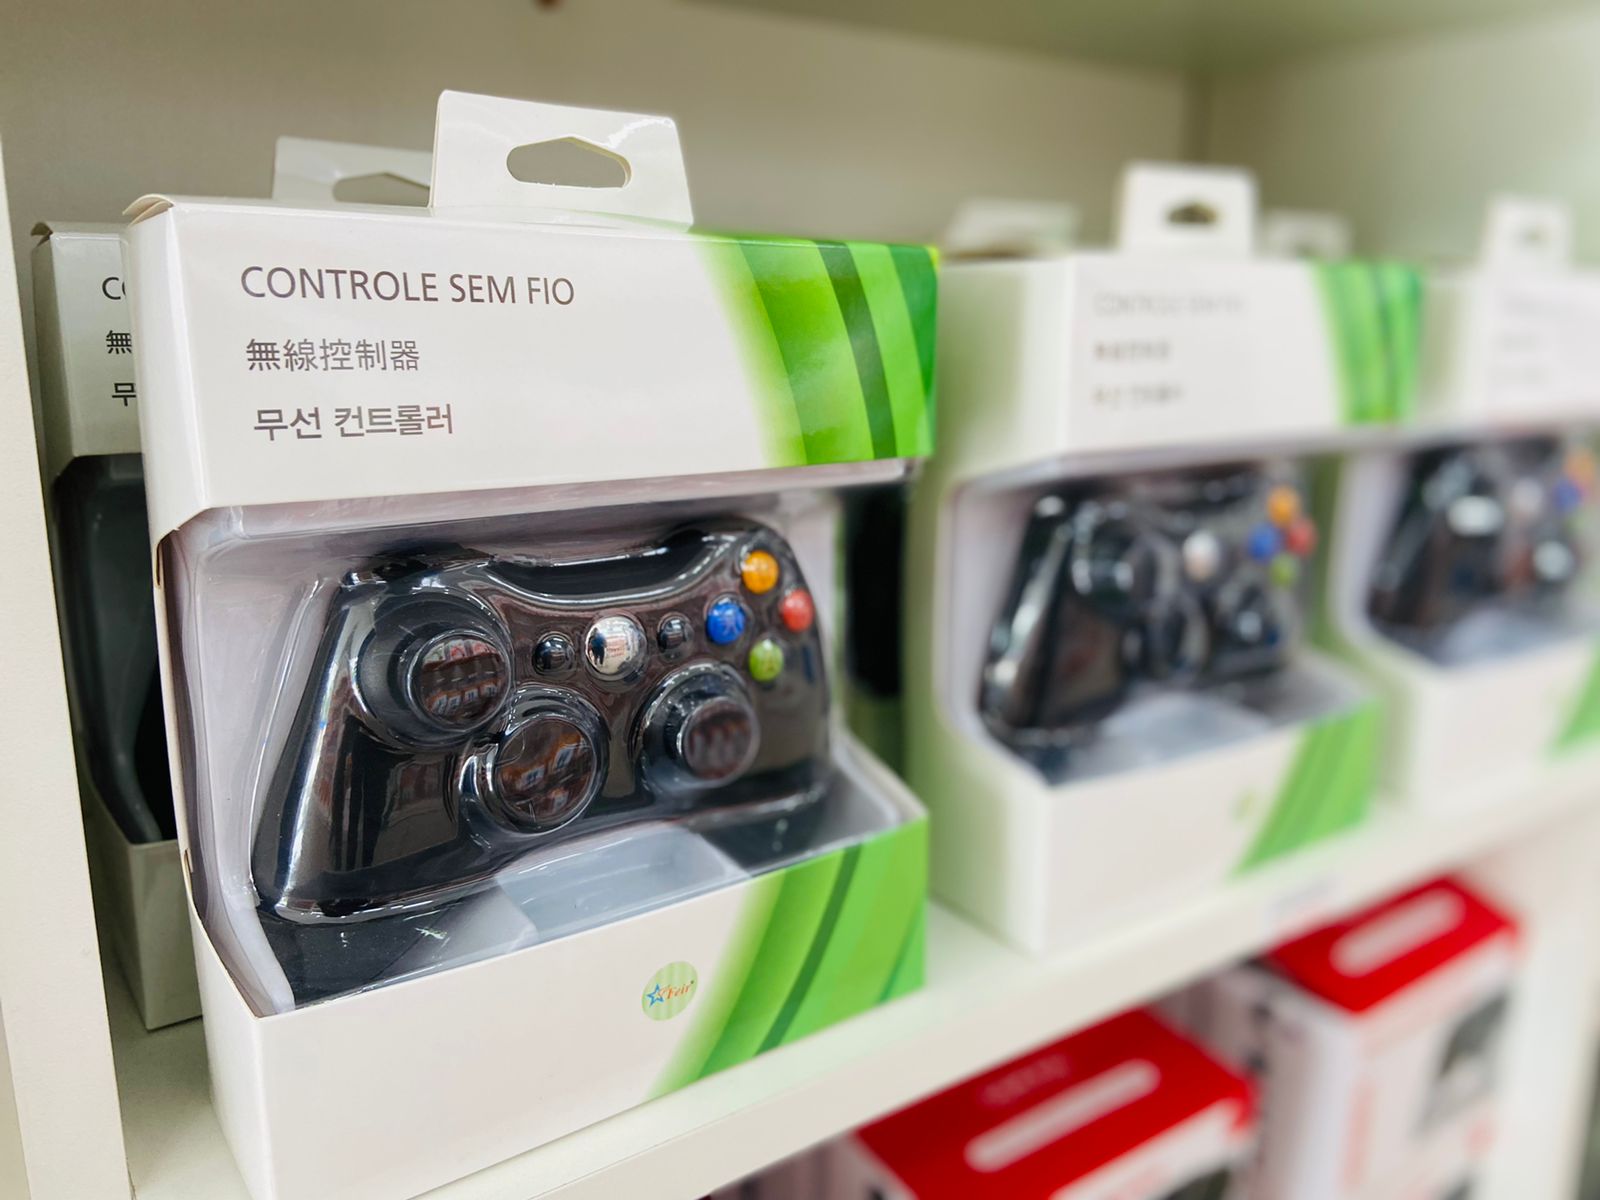 Controle FR-305 Xbox 360 PC - Feir com o Melhor Preço é no Zoom